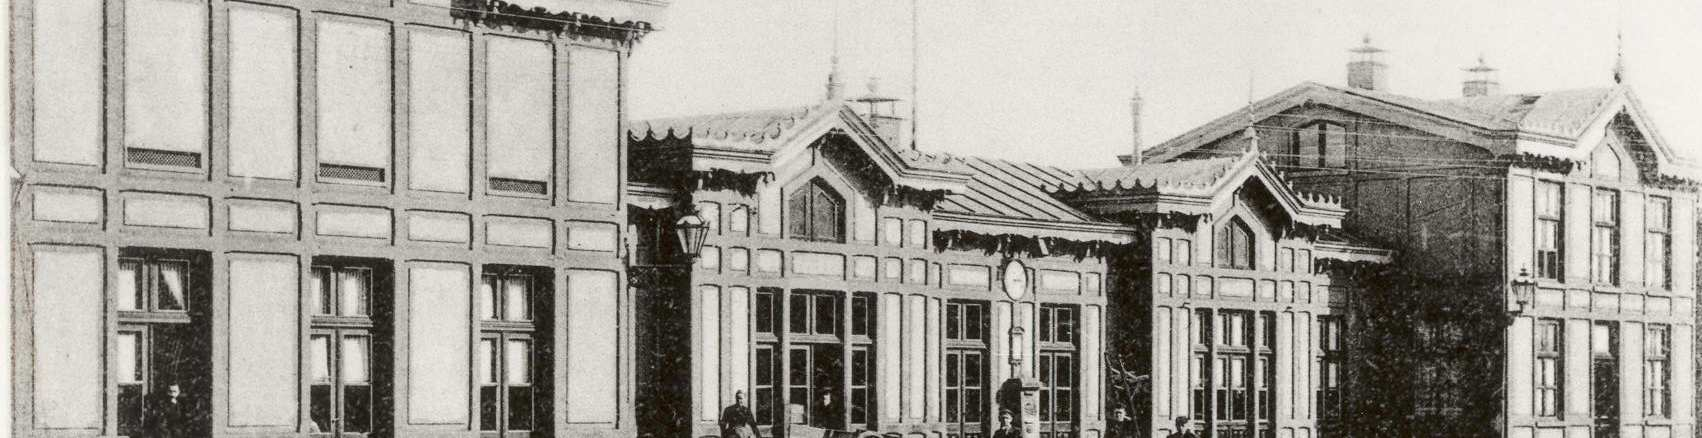 De bouw van het stationsgebouw werd samen met enige kleinere bijgebouwen en het haltegebouw te Wouw aanbesteed op 27 november 1862. De oplevering vond plaats op 30 september 1863.